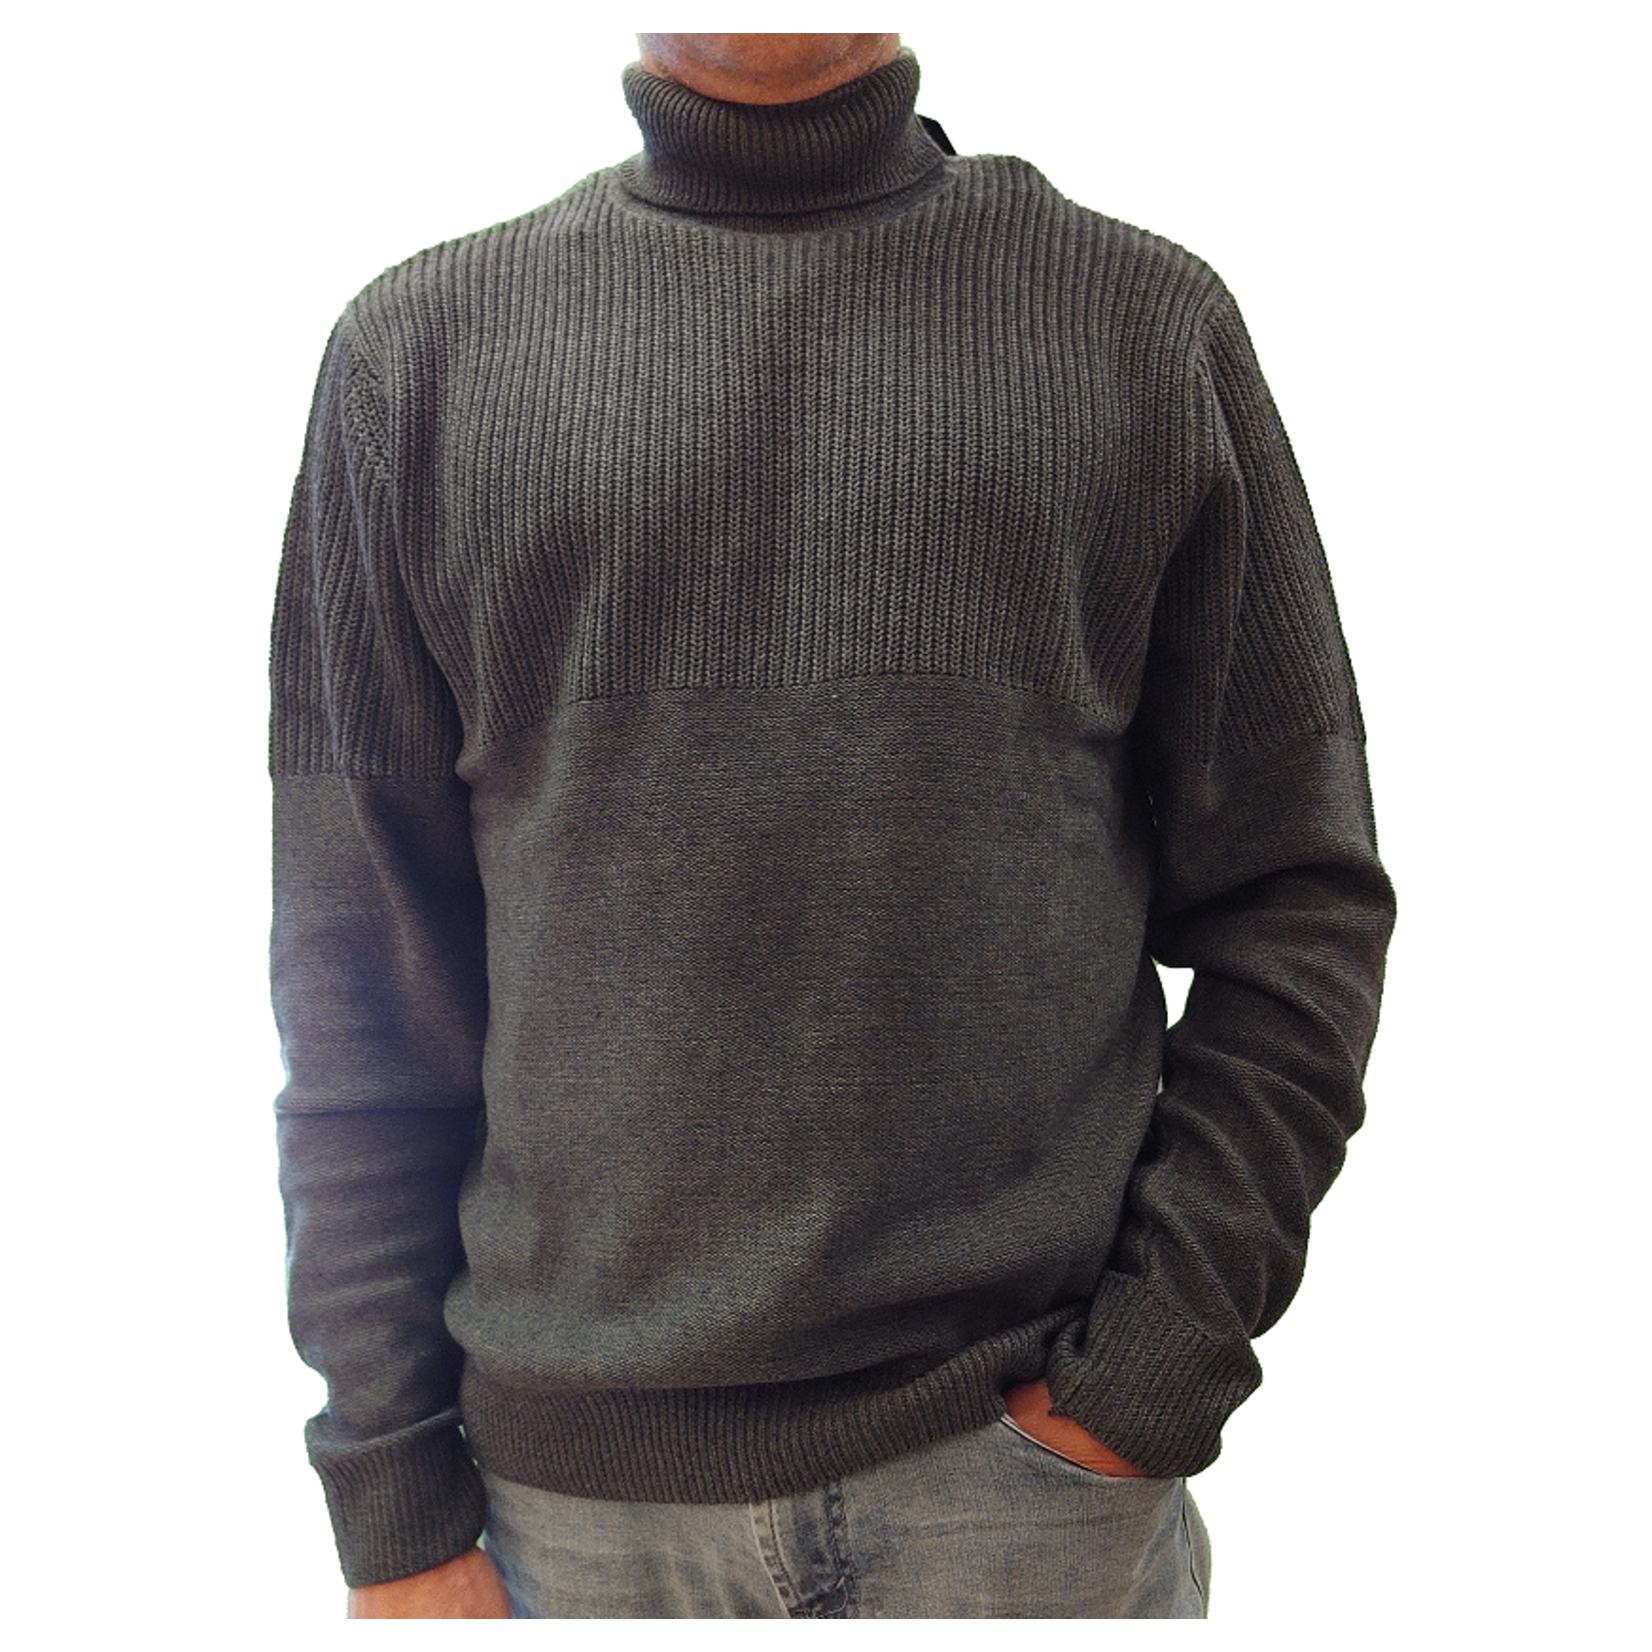 Black Bull BlackBull long sleeve turtle neck knit sweater